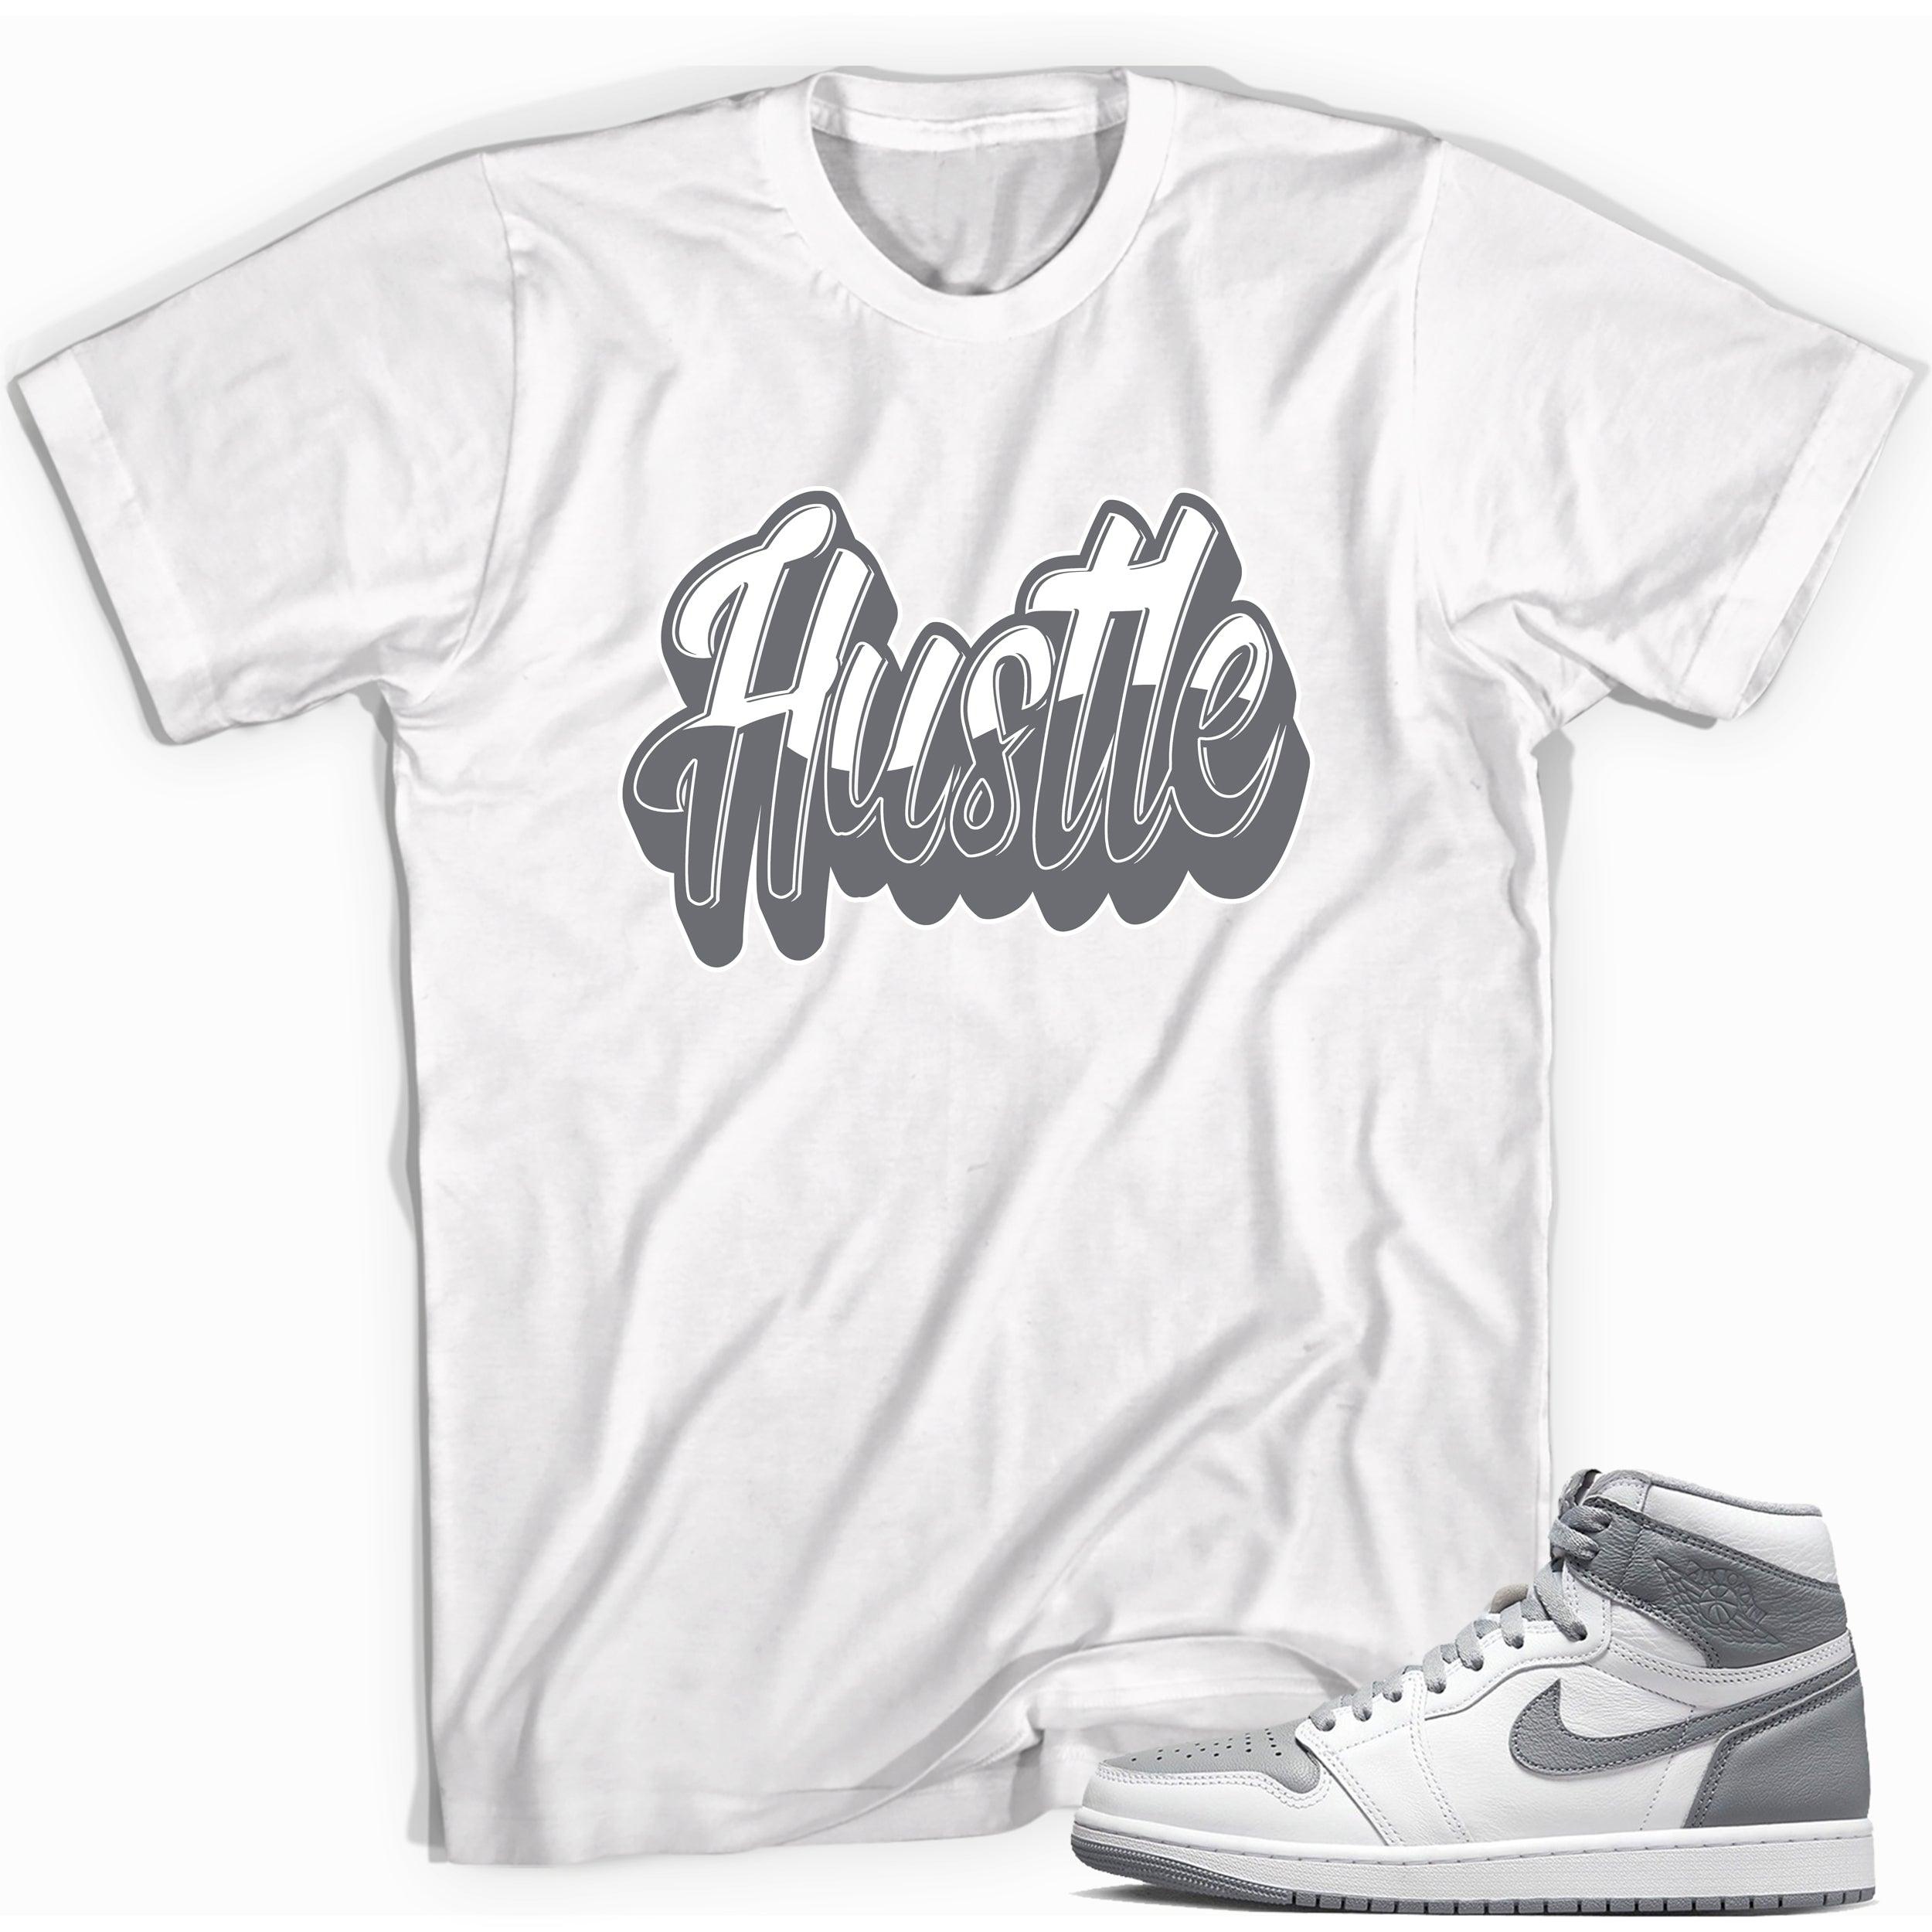 Hustle Shirt for Jordan 1s photo